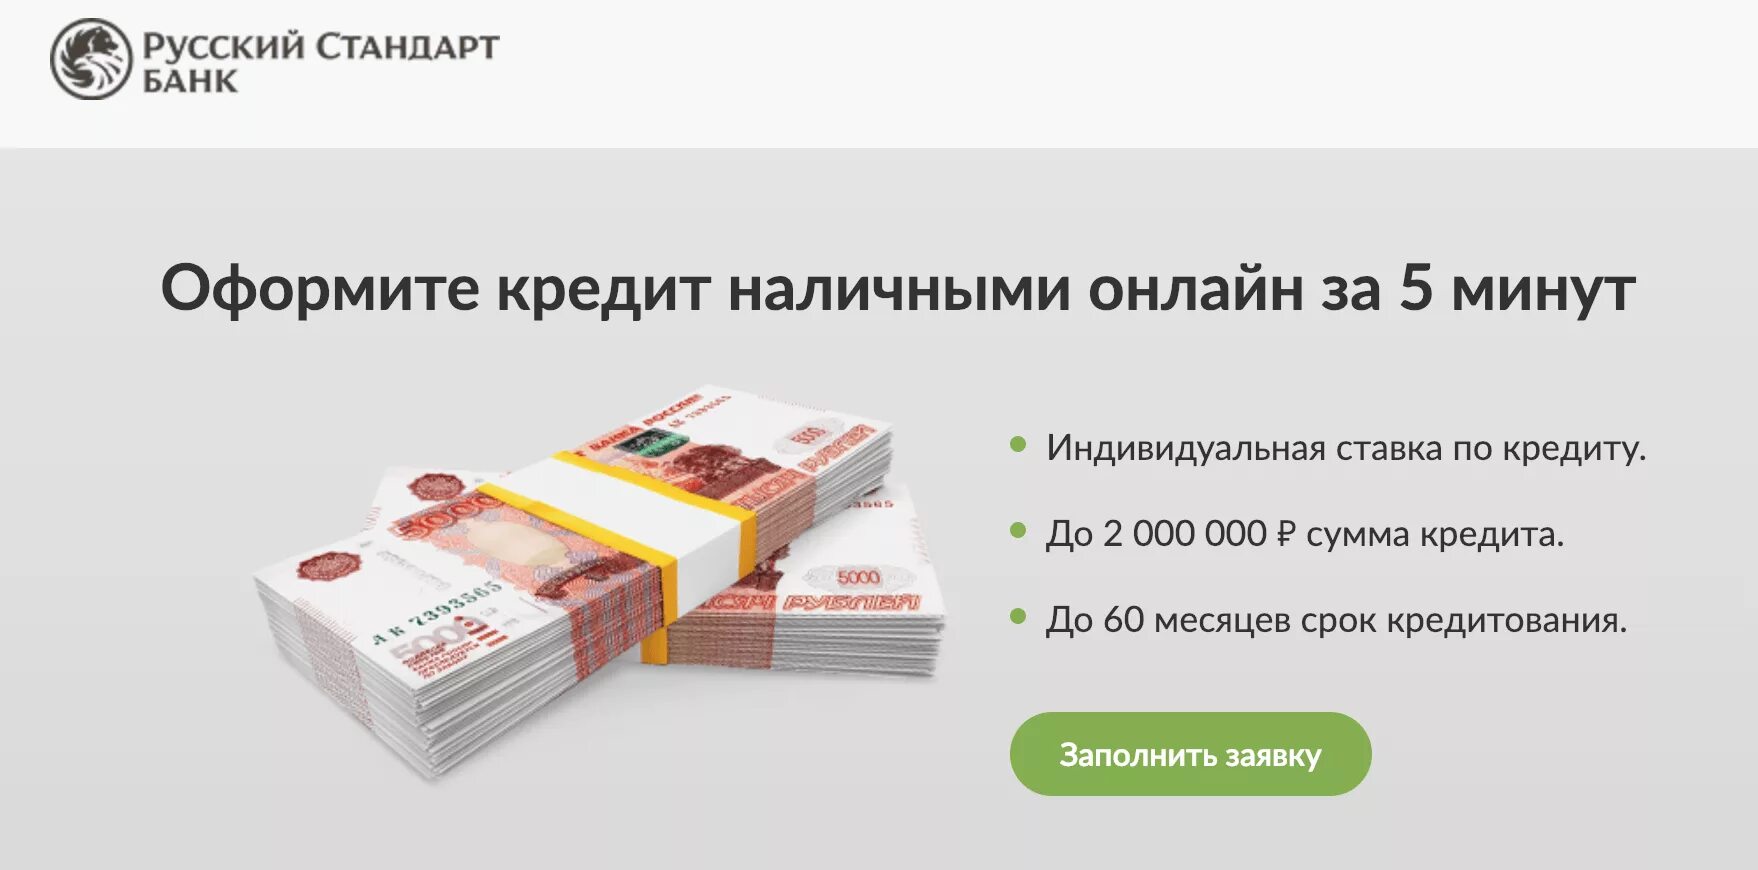 Займ срочно rsb. Потребительский кредит русский стандарт. Банк русский стандарт кредит наличными.